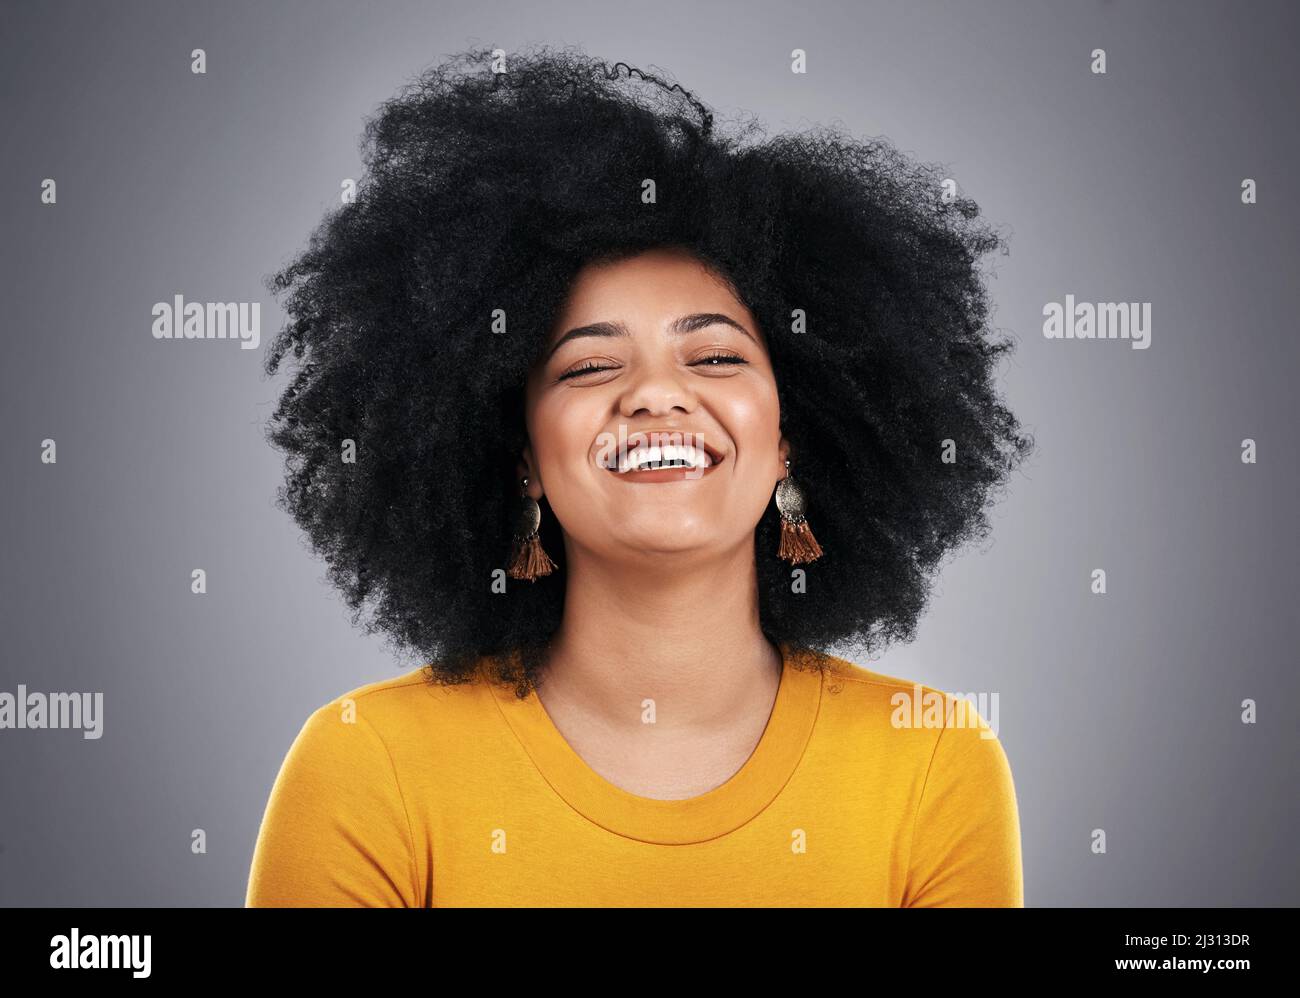 Brillent avec ce sourire glorieux. Photo en studio d'une jeune femme attrayante posant sur un fond gris. Banque D'Images